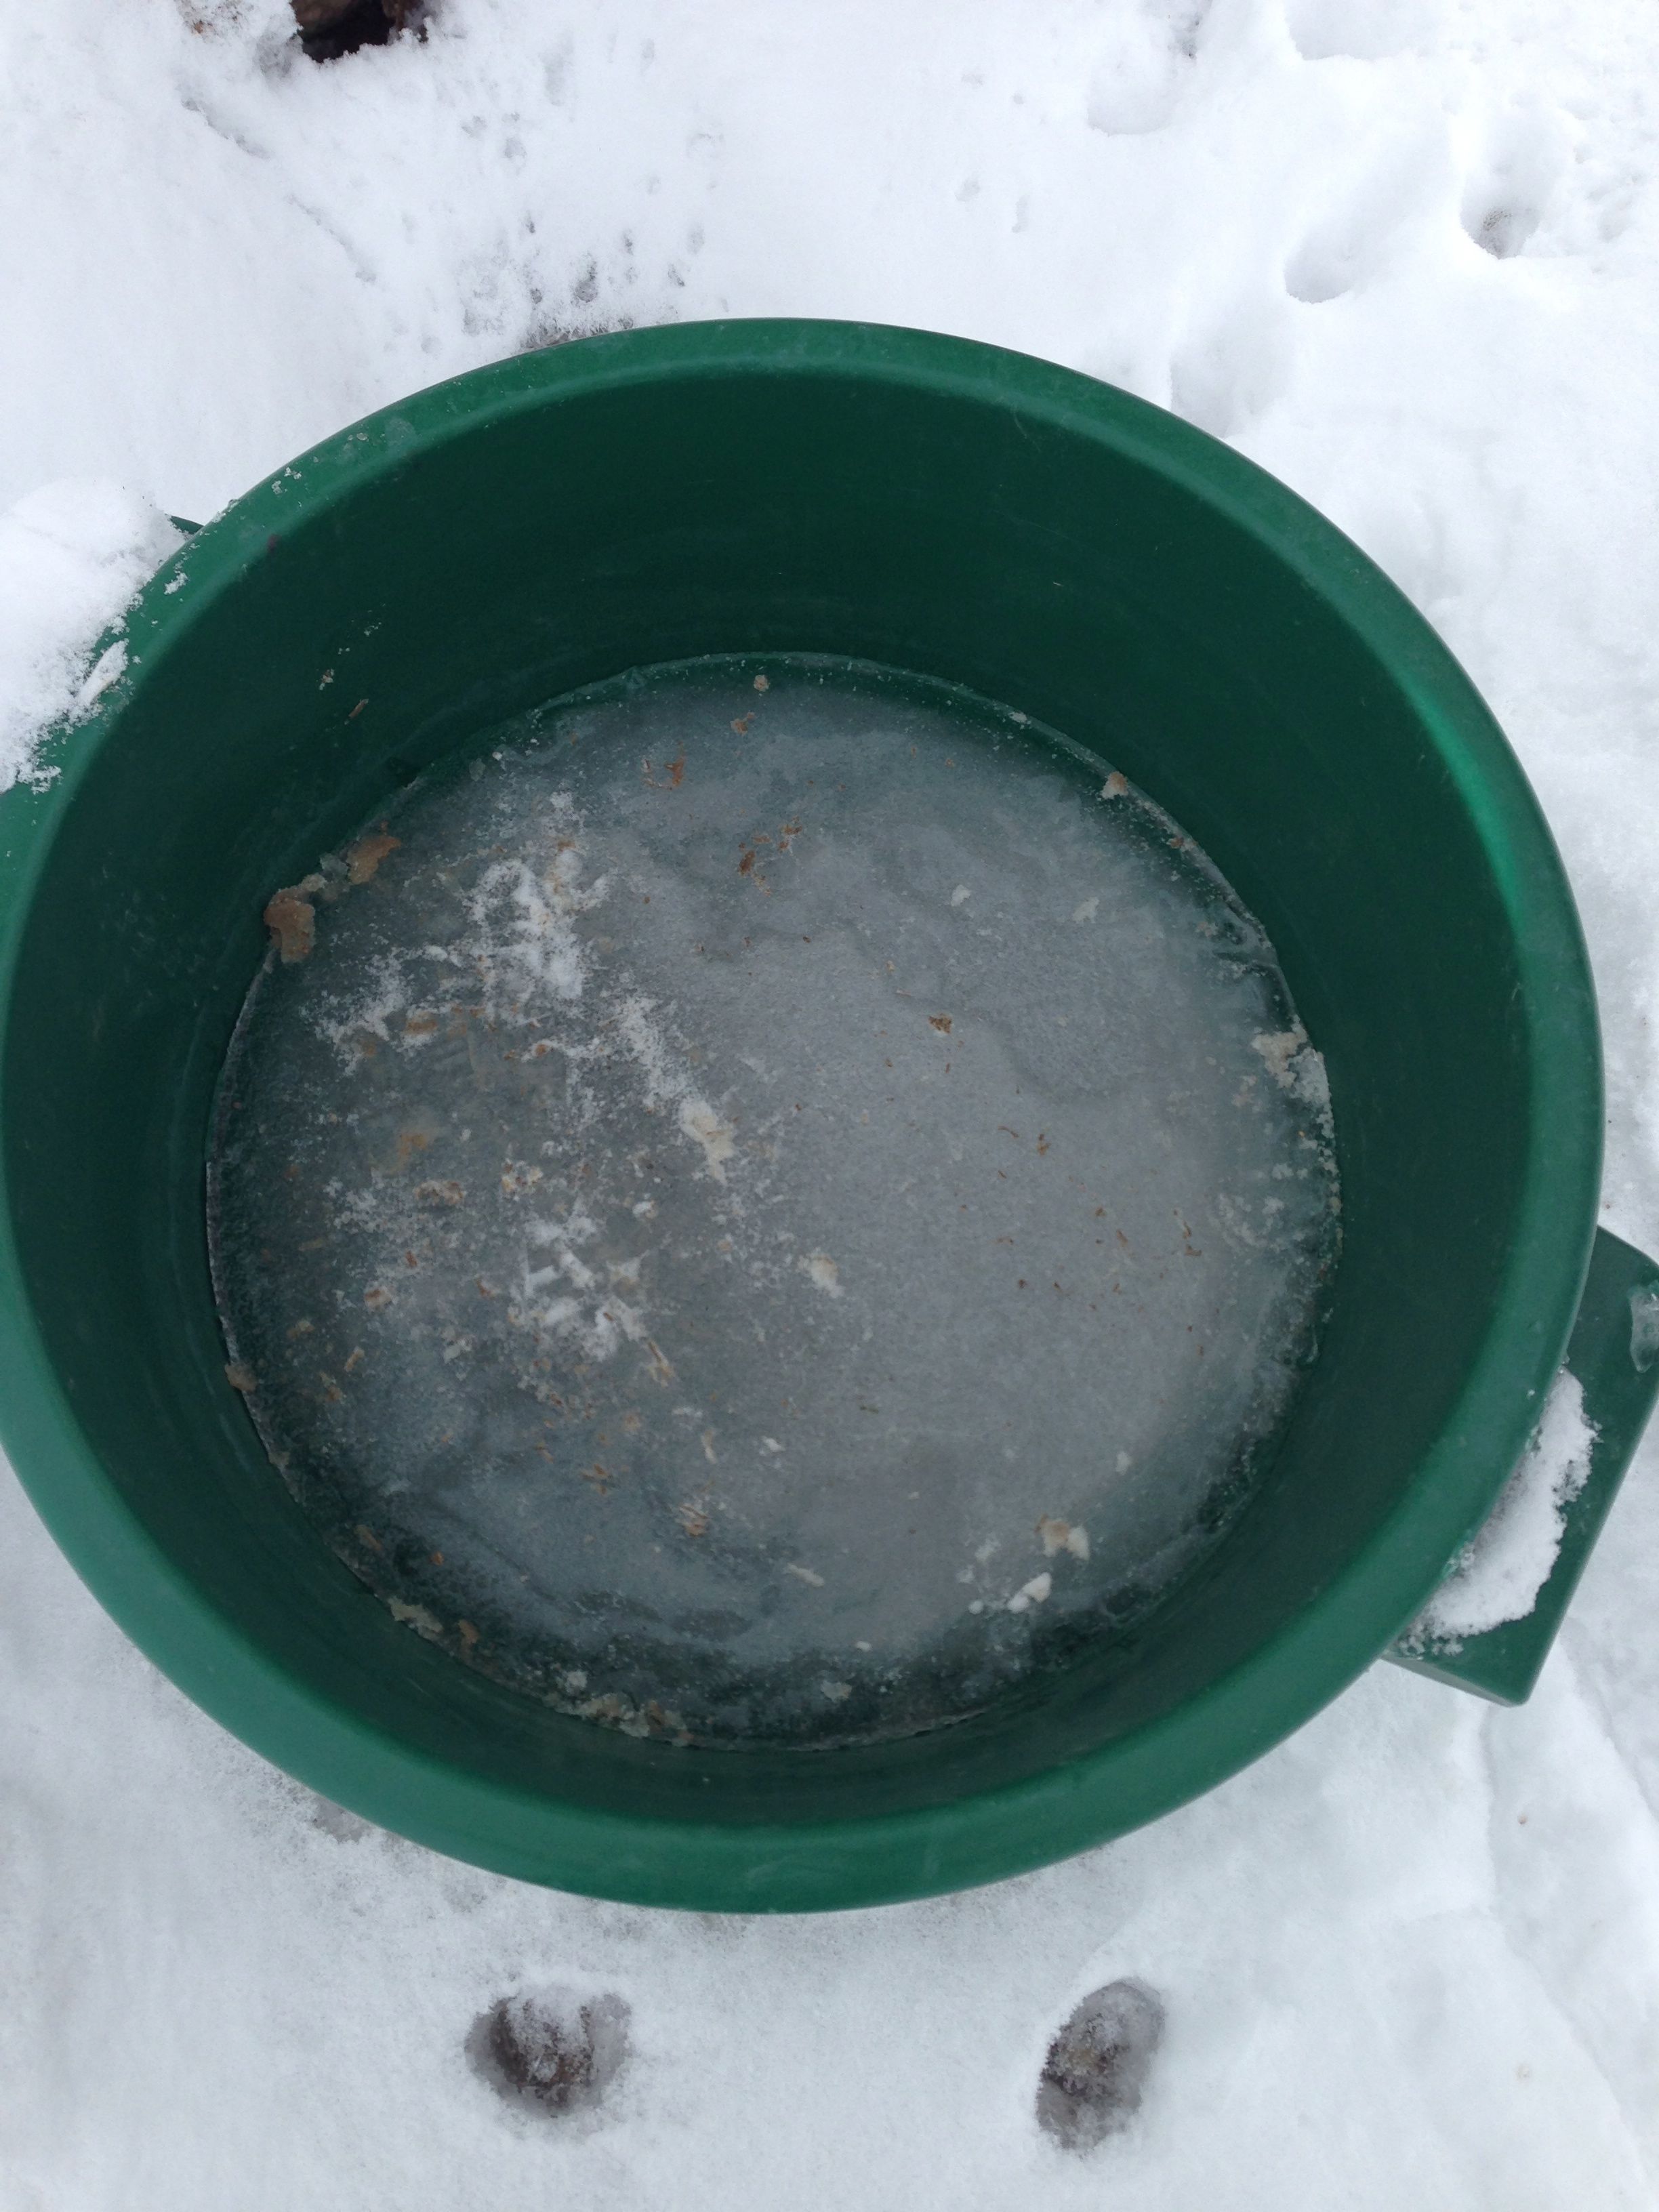 Water bucket frozen solid